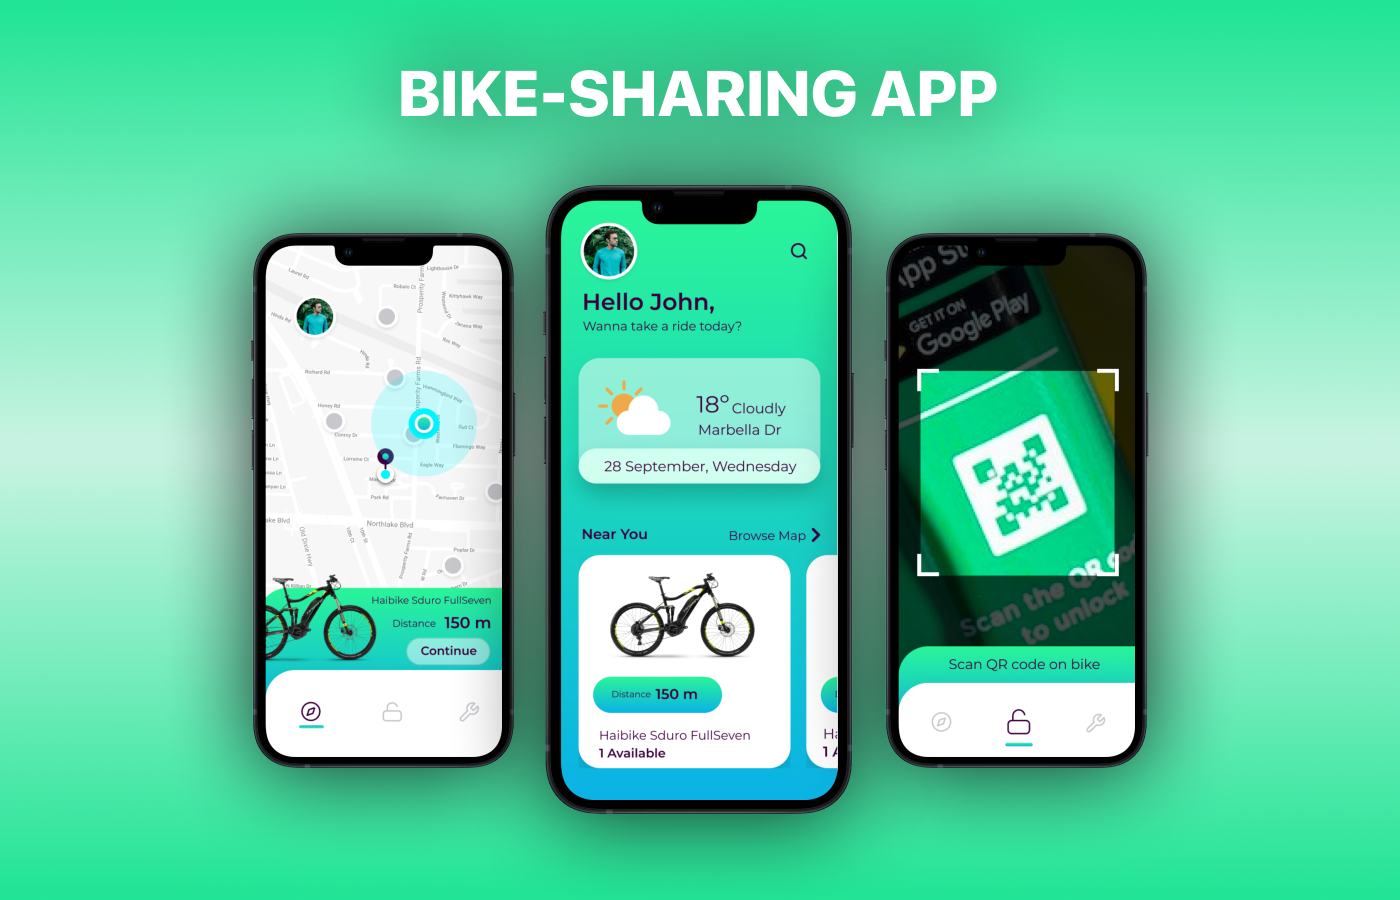 app design Bike-sharing app design Mobile app mobile app design sharing app UI/UX Bike sharing ride rental